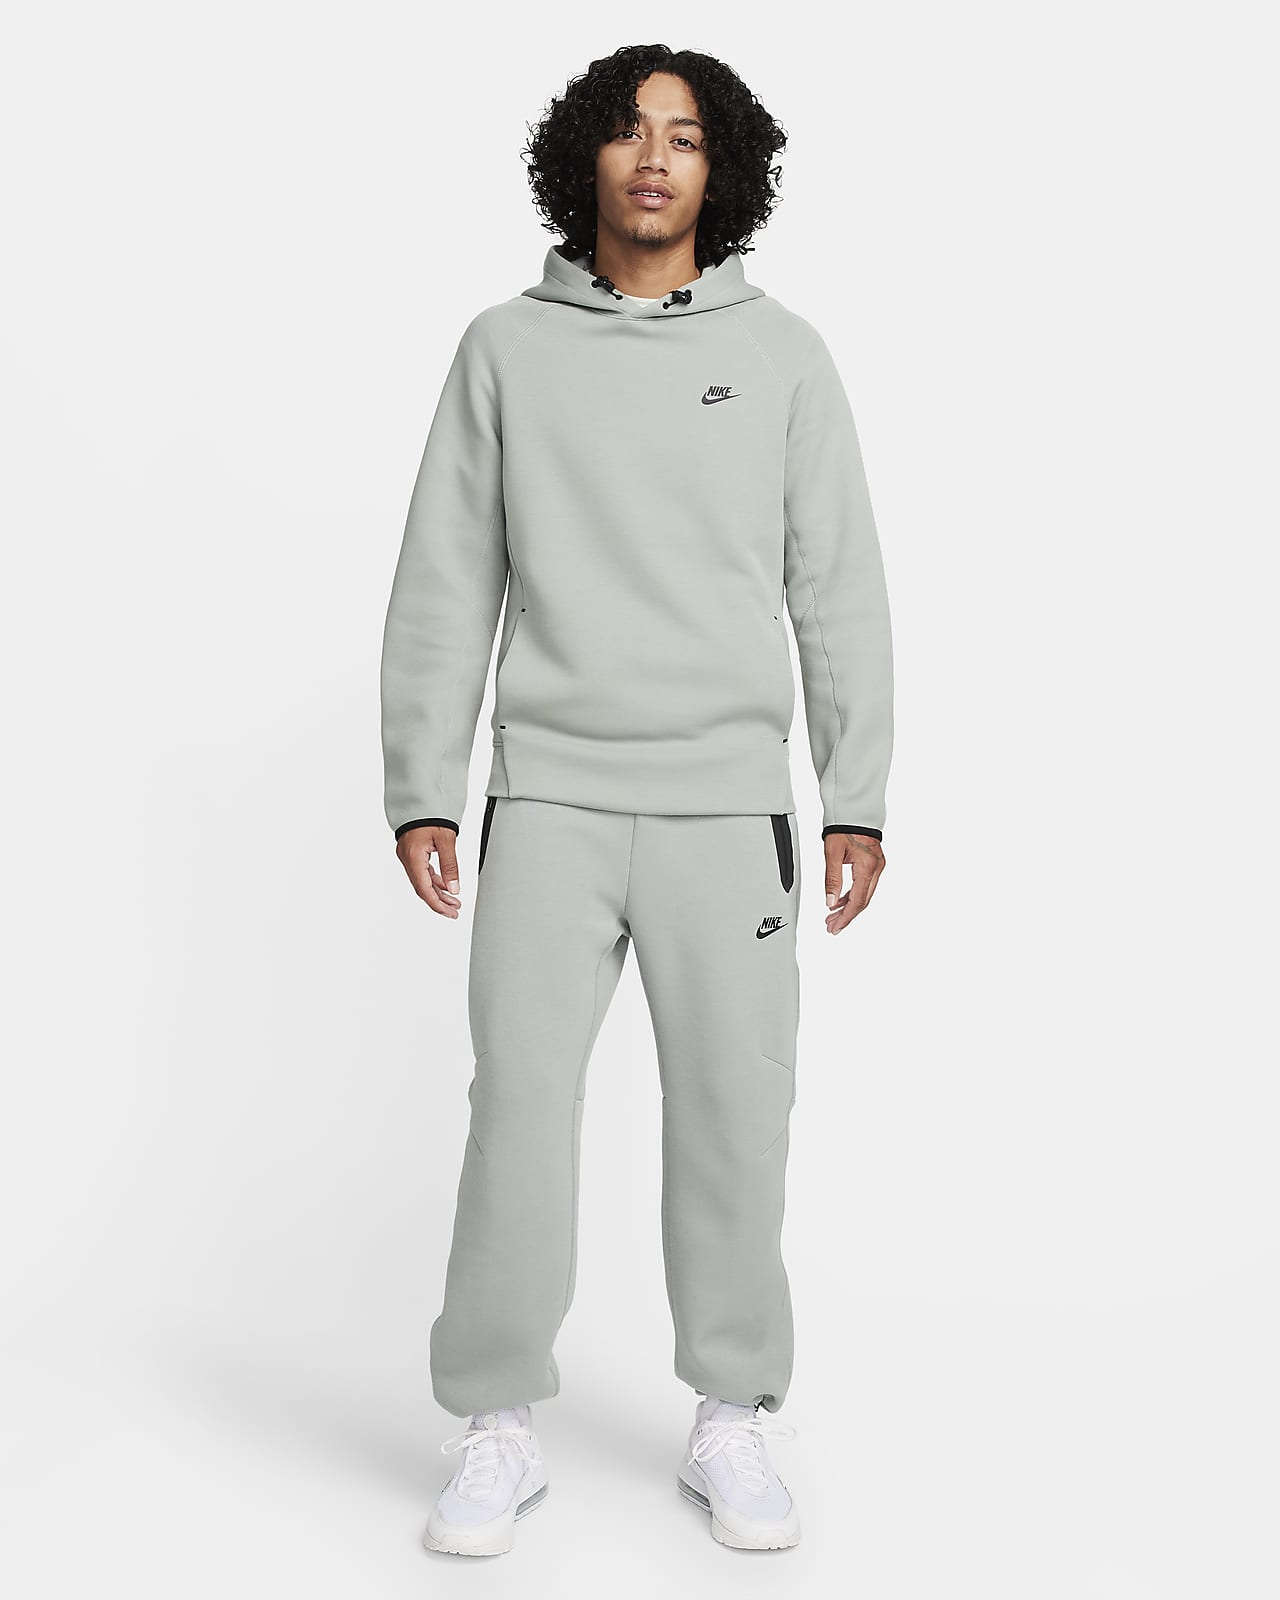 Nike Sportswear Tech Fleece Men's Pullover Hoodie. Nike LU